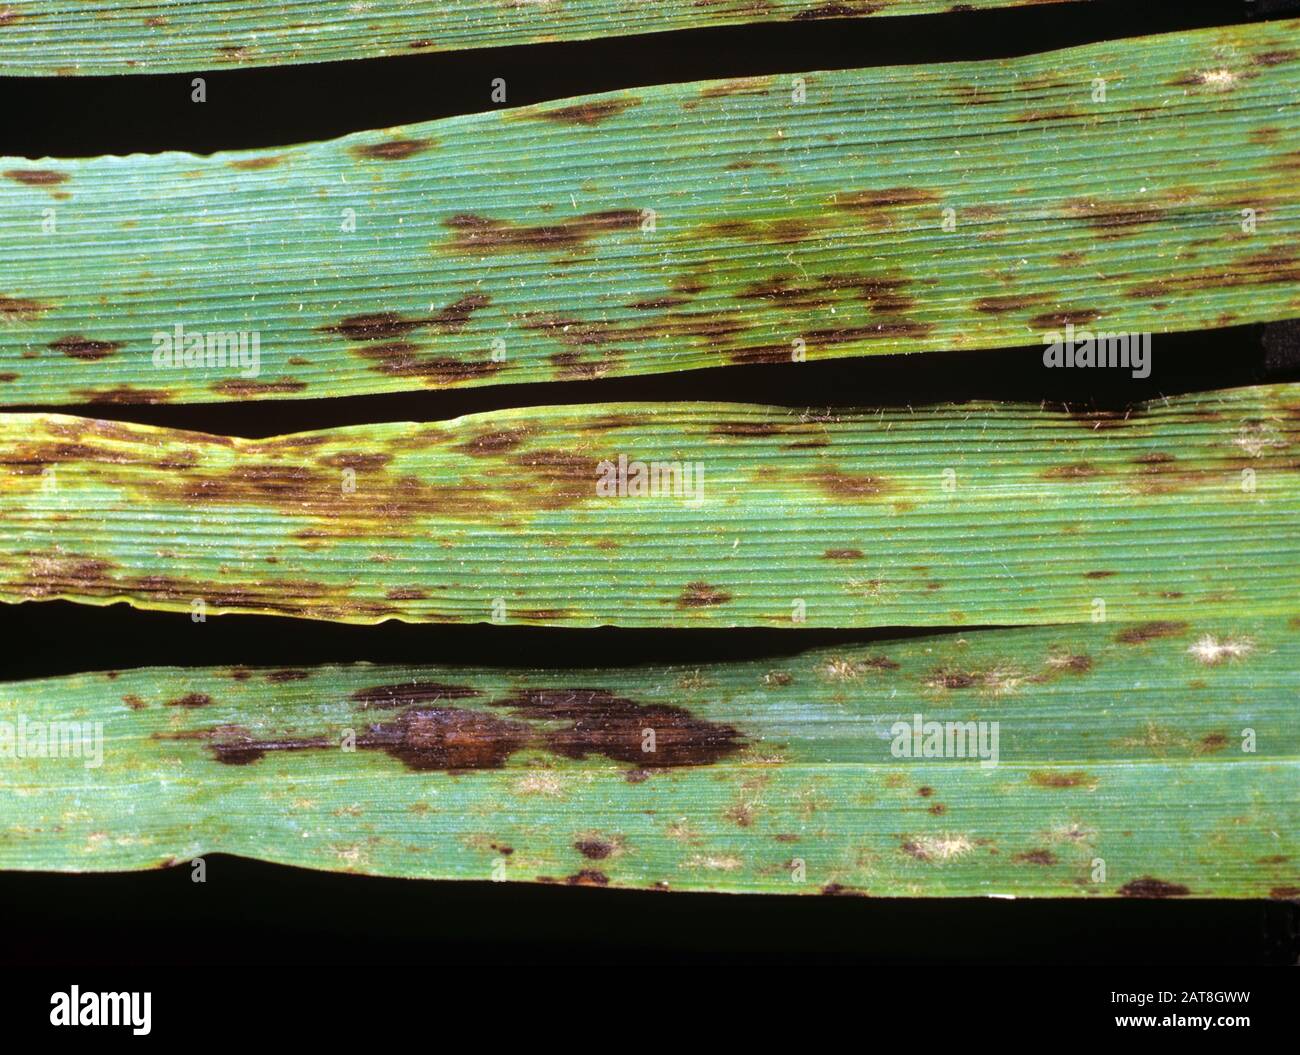 Reacción hipersensible al mildiú polvoroso (Blumeria graminis f.sp. Hordei) que causa lesiones necróticas en la hoja de cebada Foto de stock